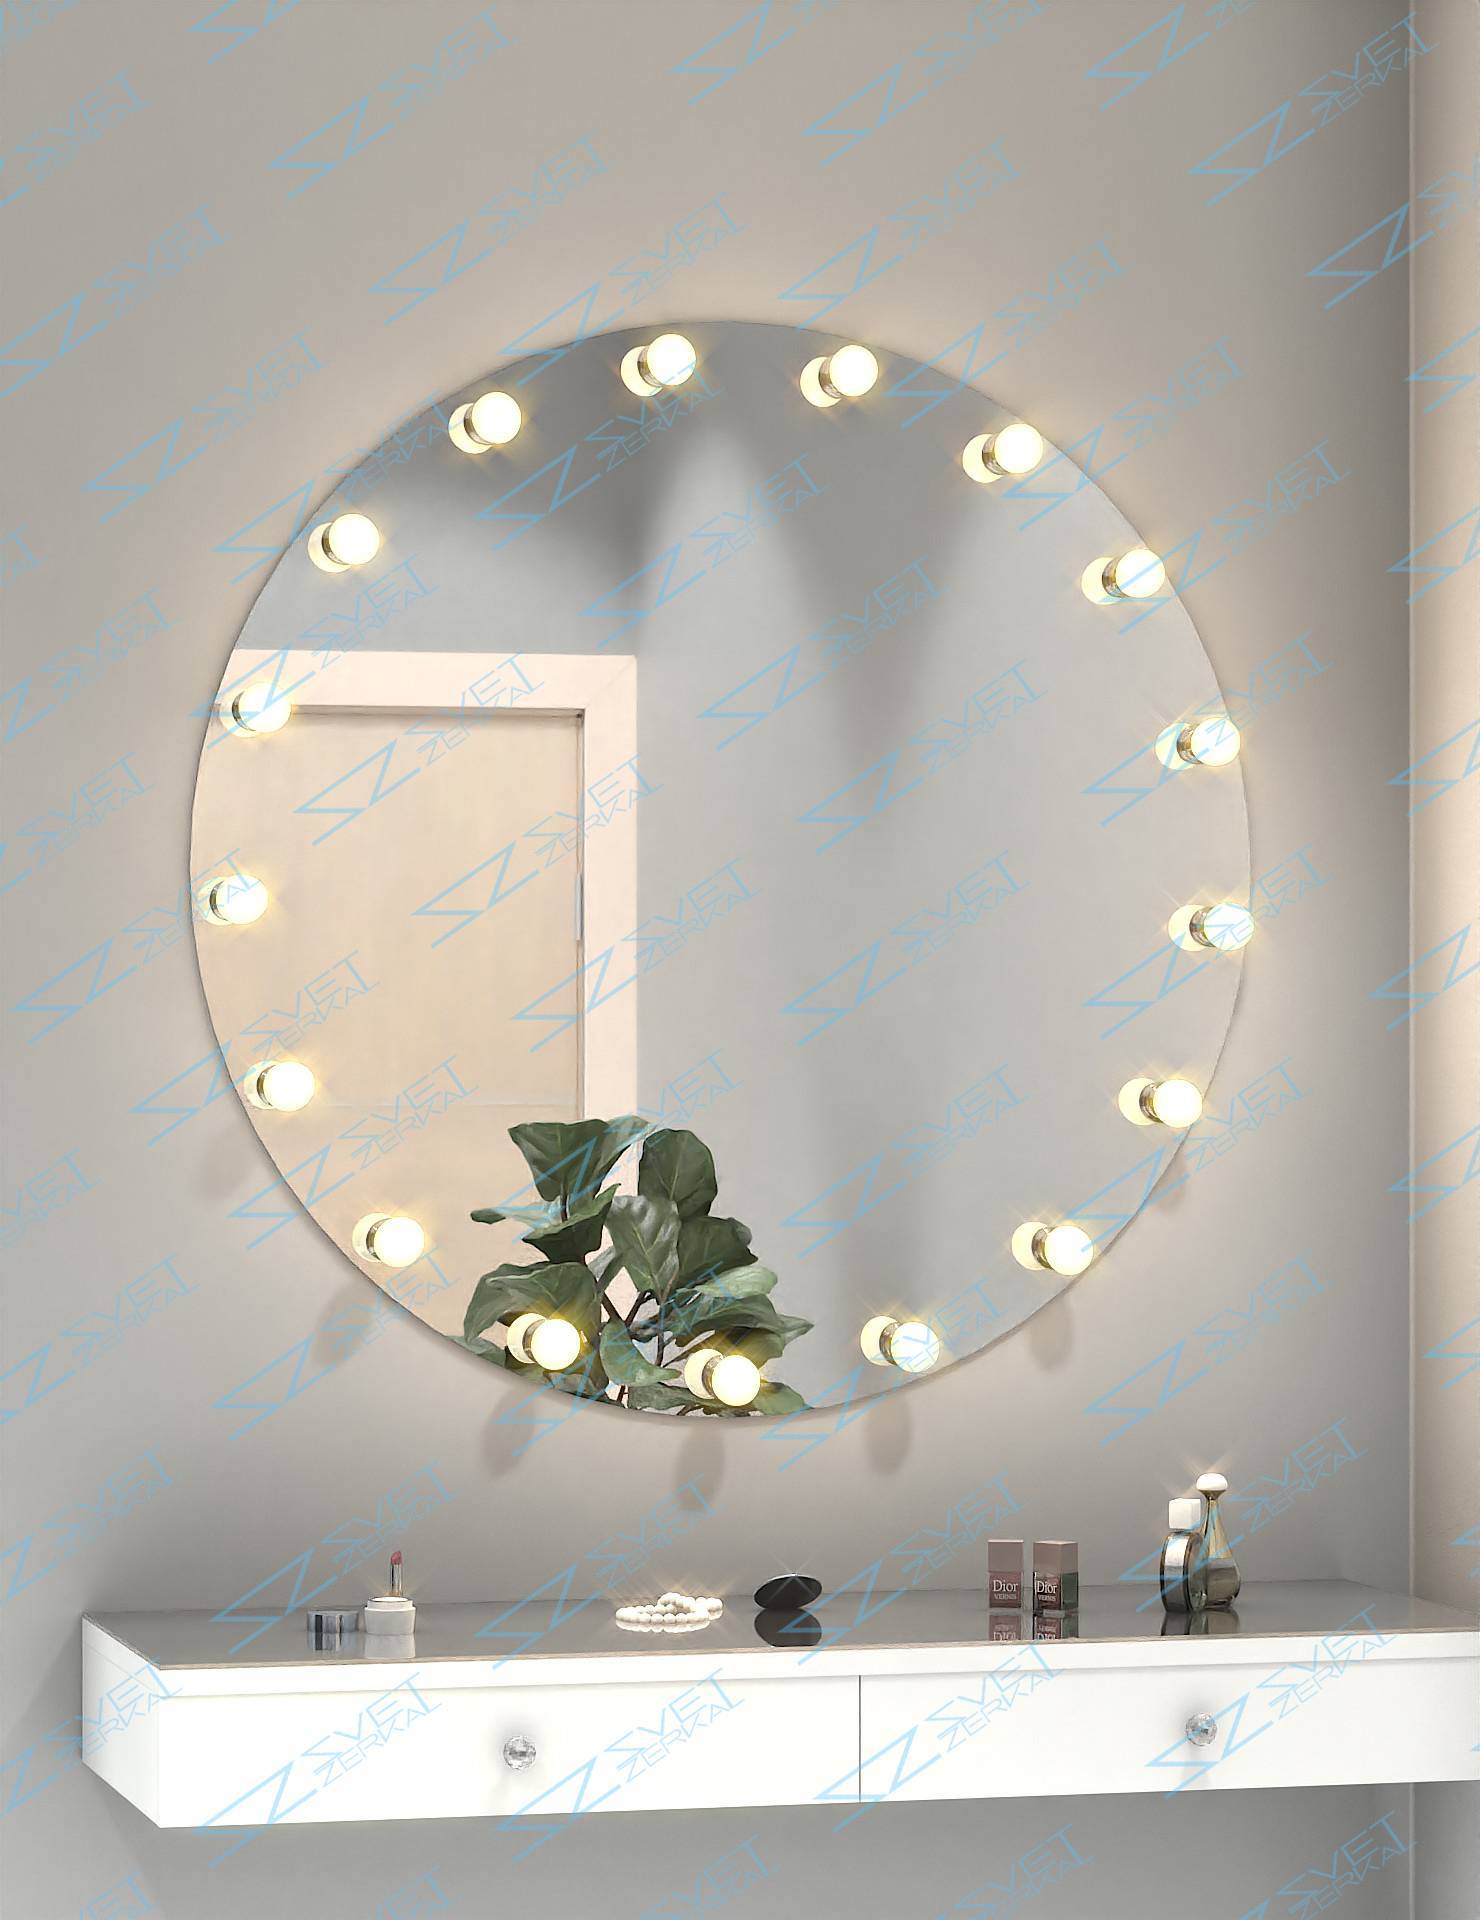 Делаем светодиодную подсветку зеркала в ванной комнате